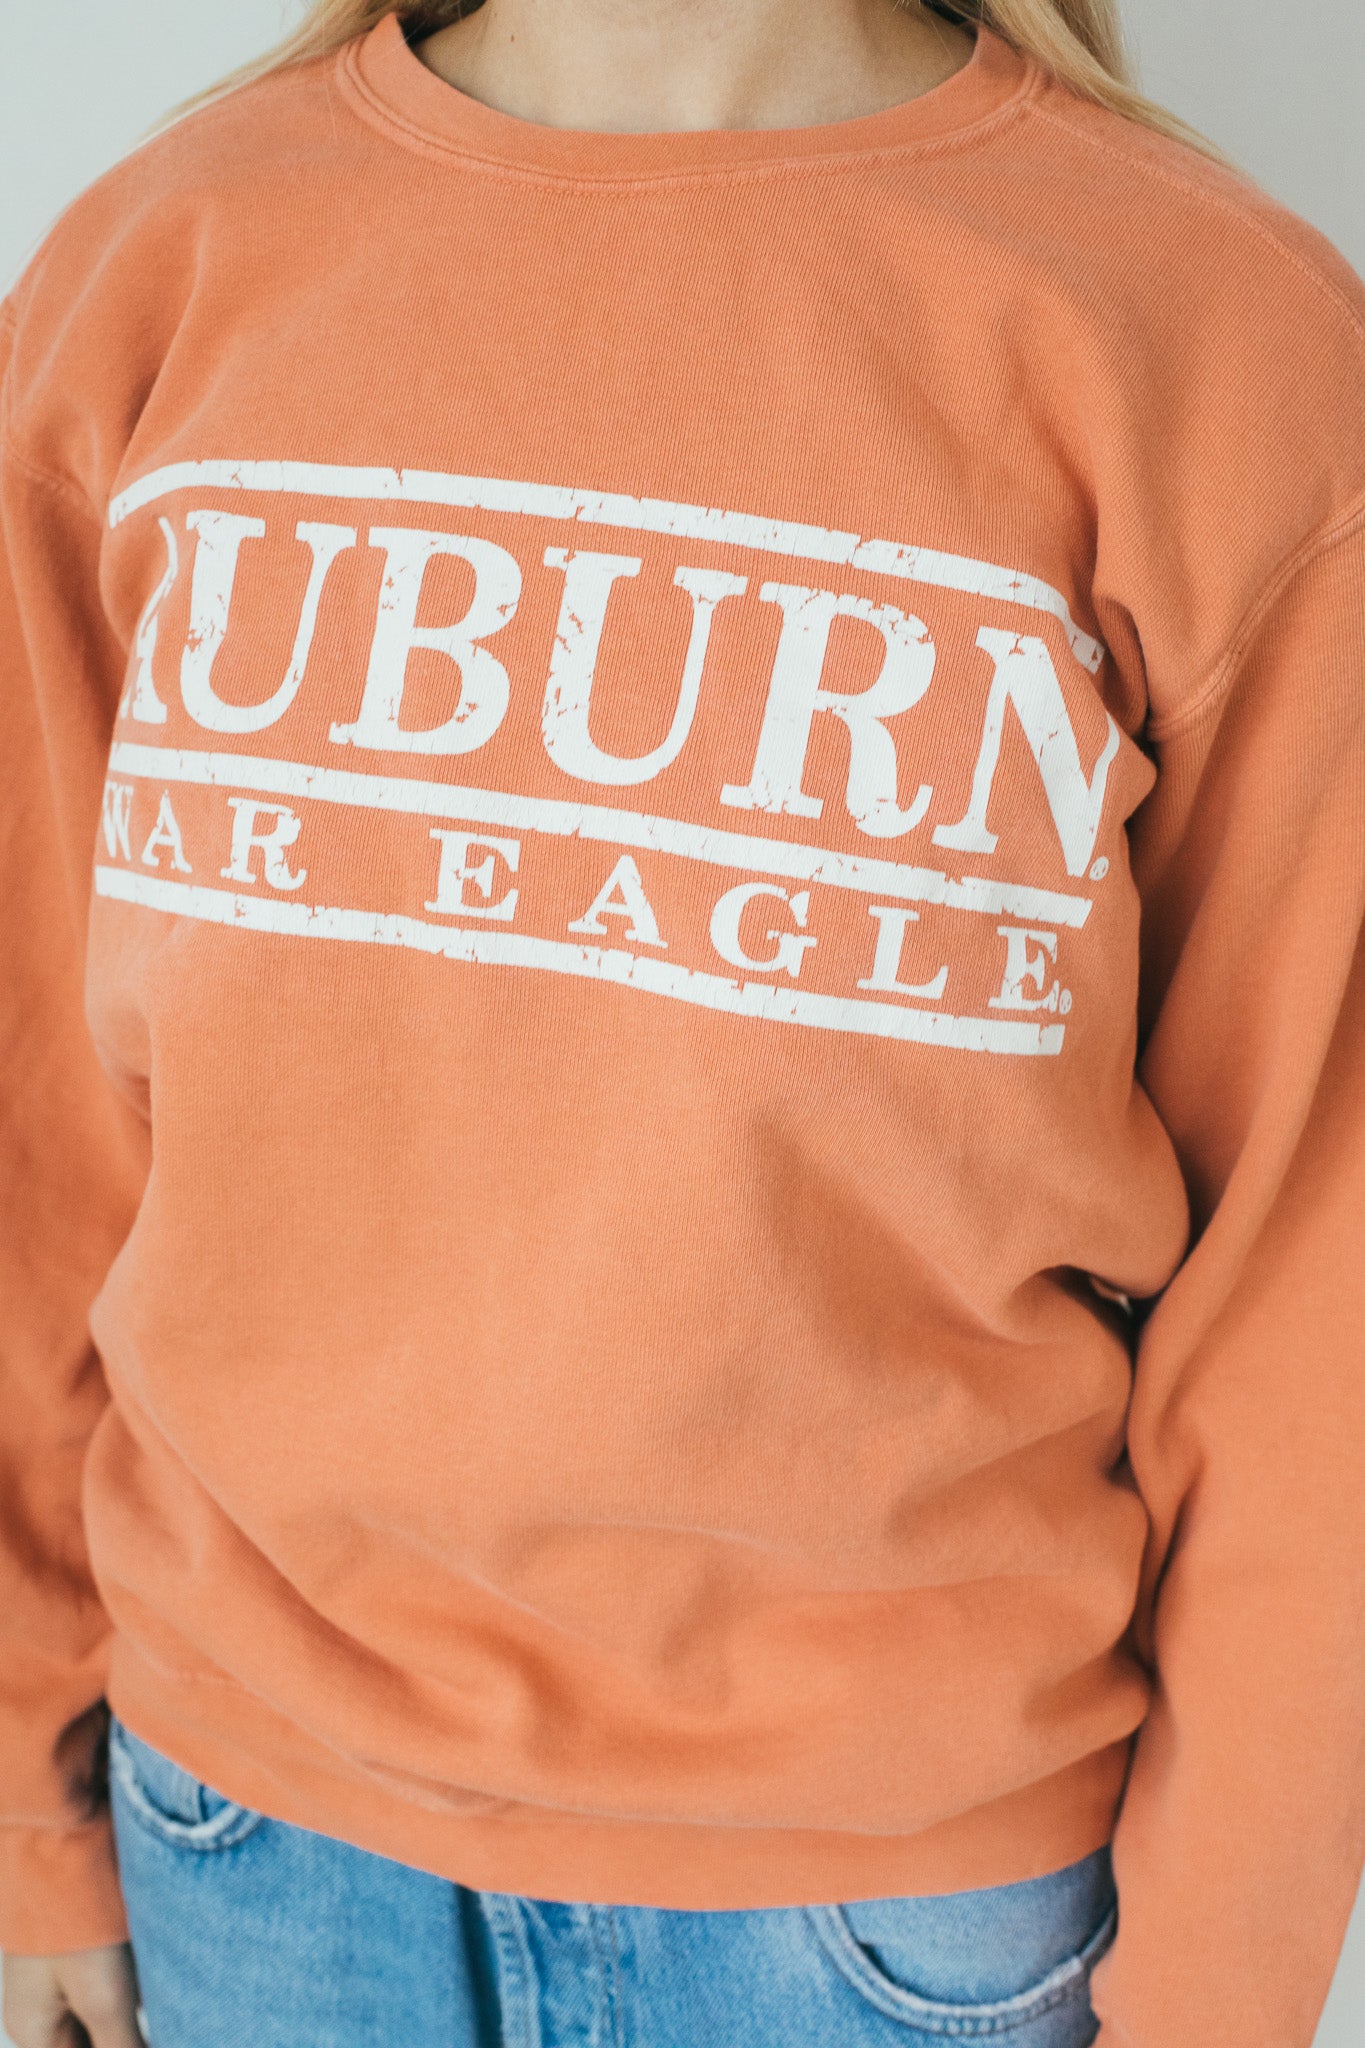 Auburn War Eagle - Sweatshirt